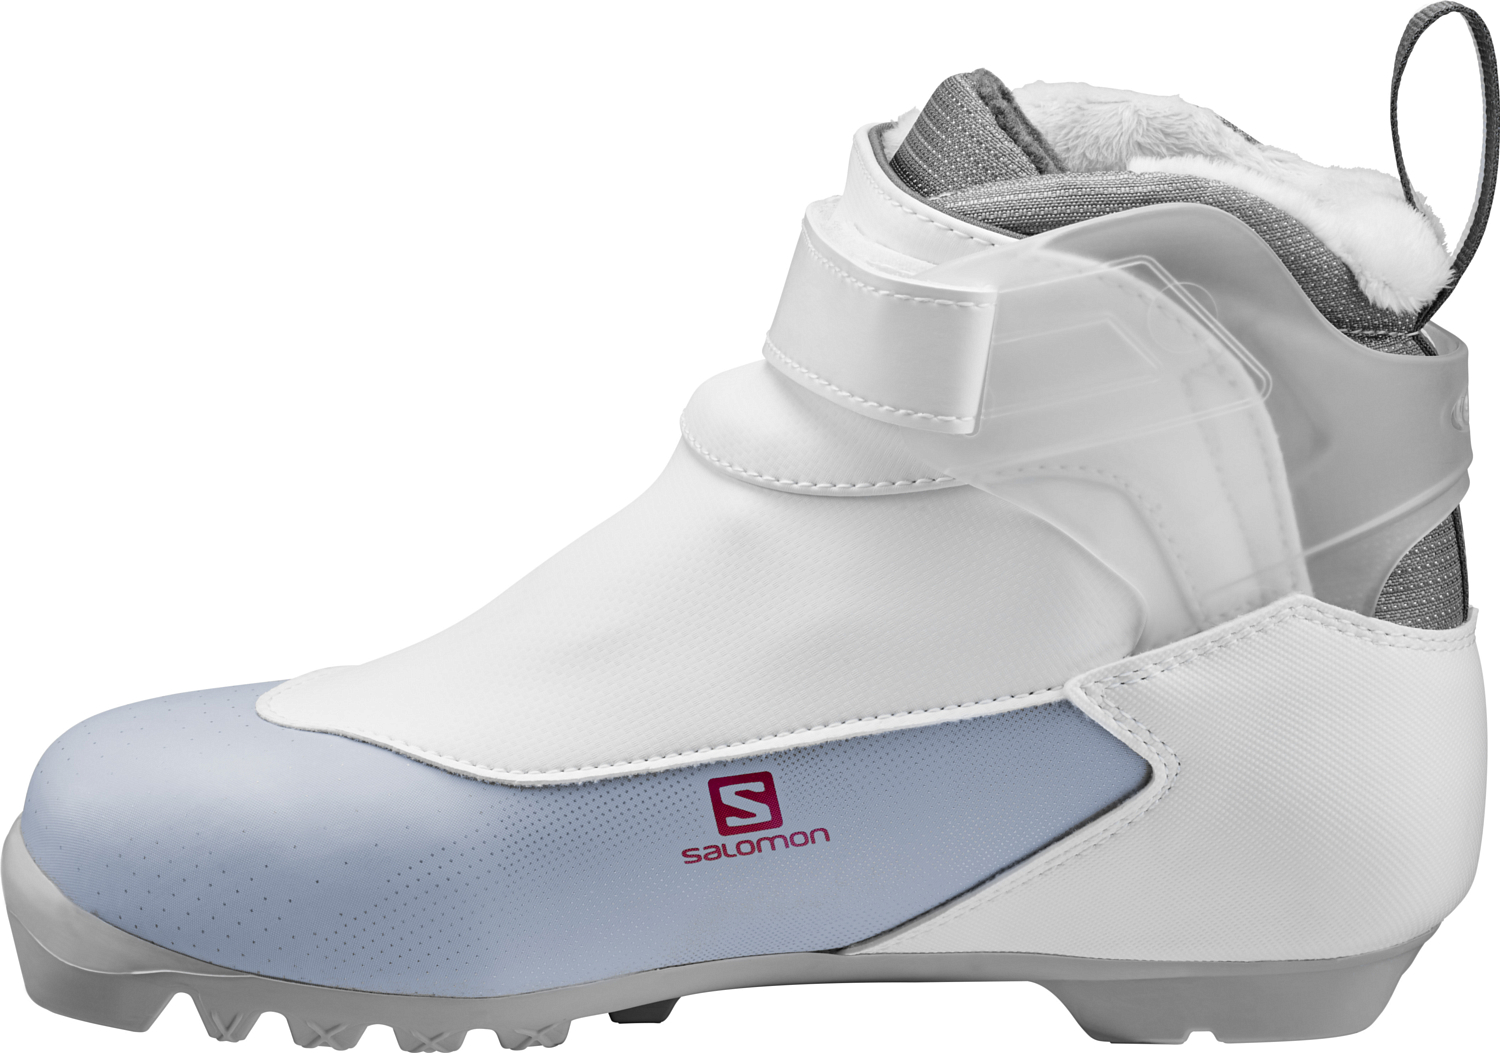 Лыжные ботинки SALOMON 2018-19 XC shoes siam 7 Prolink